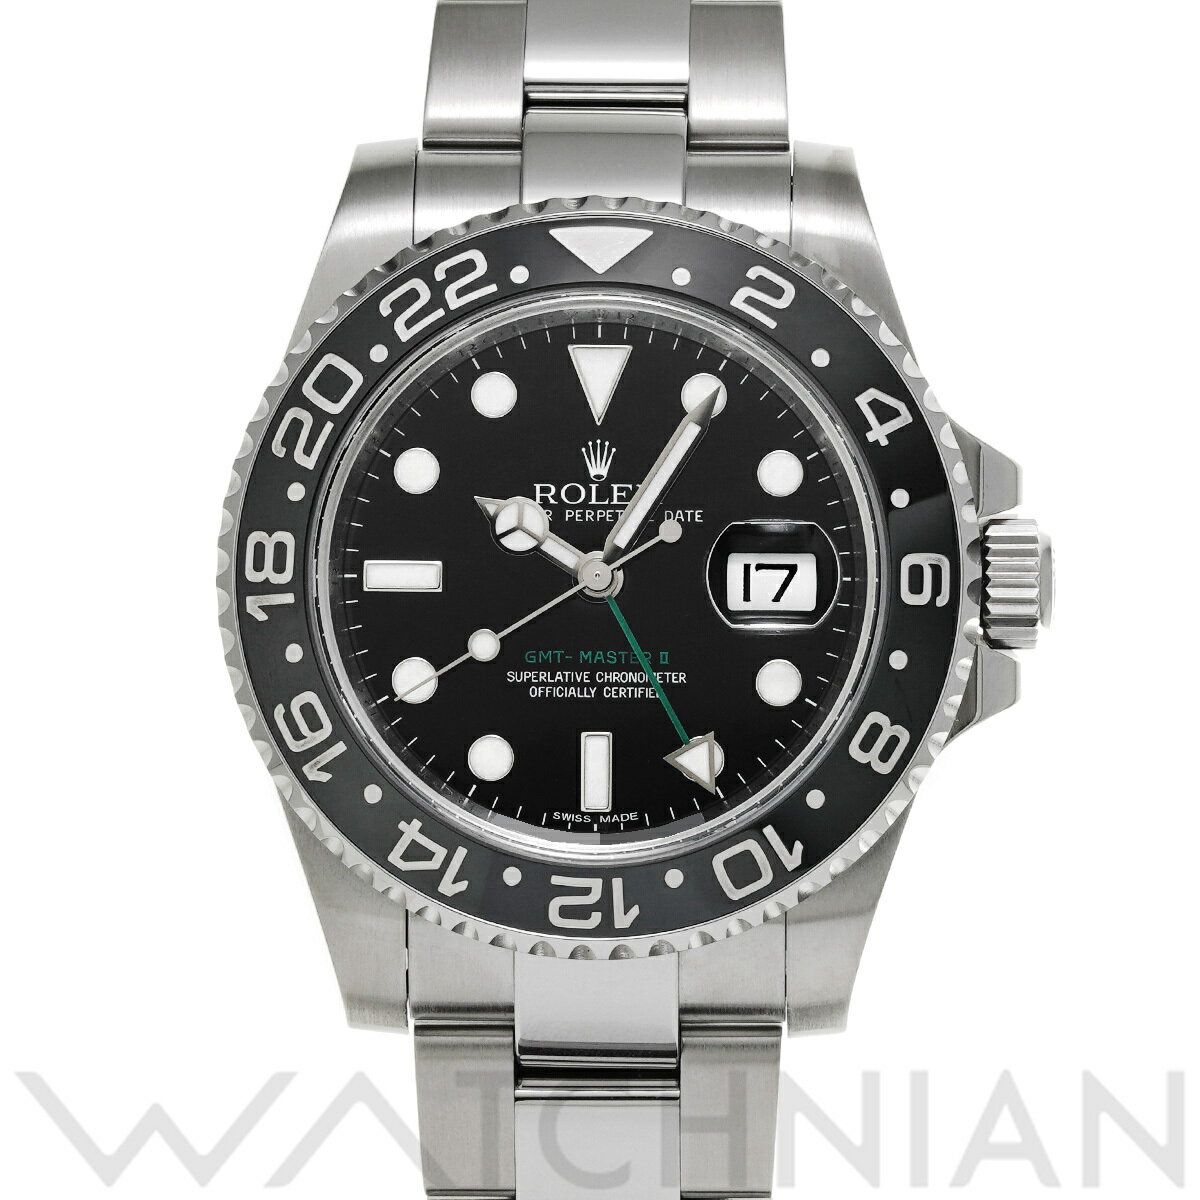 【4種選べるクーポン】【ローン60回払い無金利】【中古】 ロレックス ROLEX GMTマスターII 116710LN V番(2009年頃製造) ブラック メンズ 腕時計 ロレックス 時計 高級腕時計 ブランド